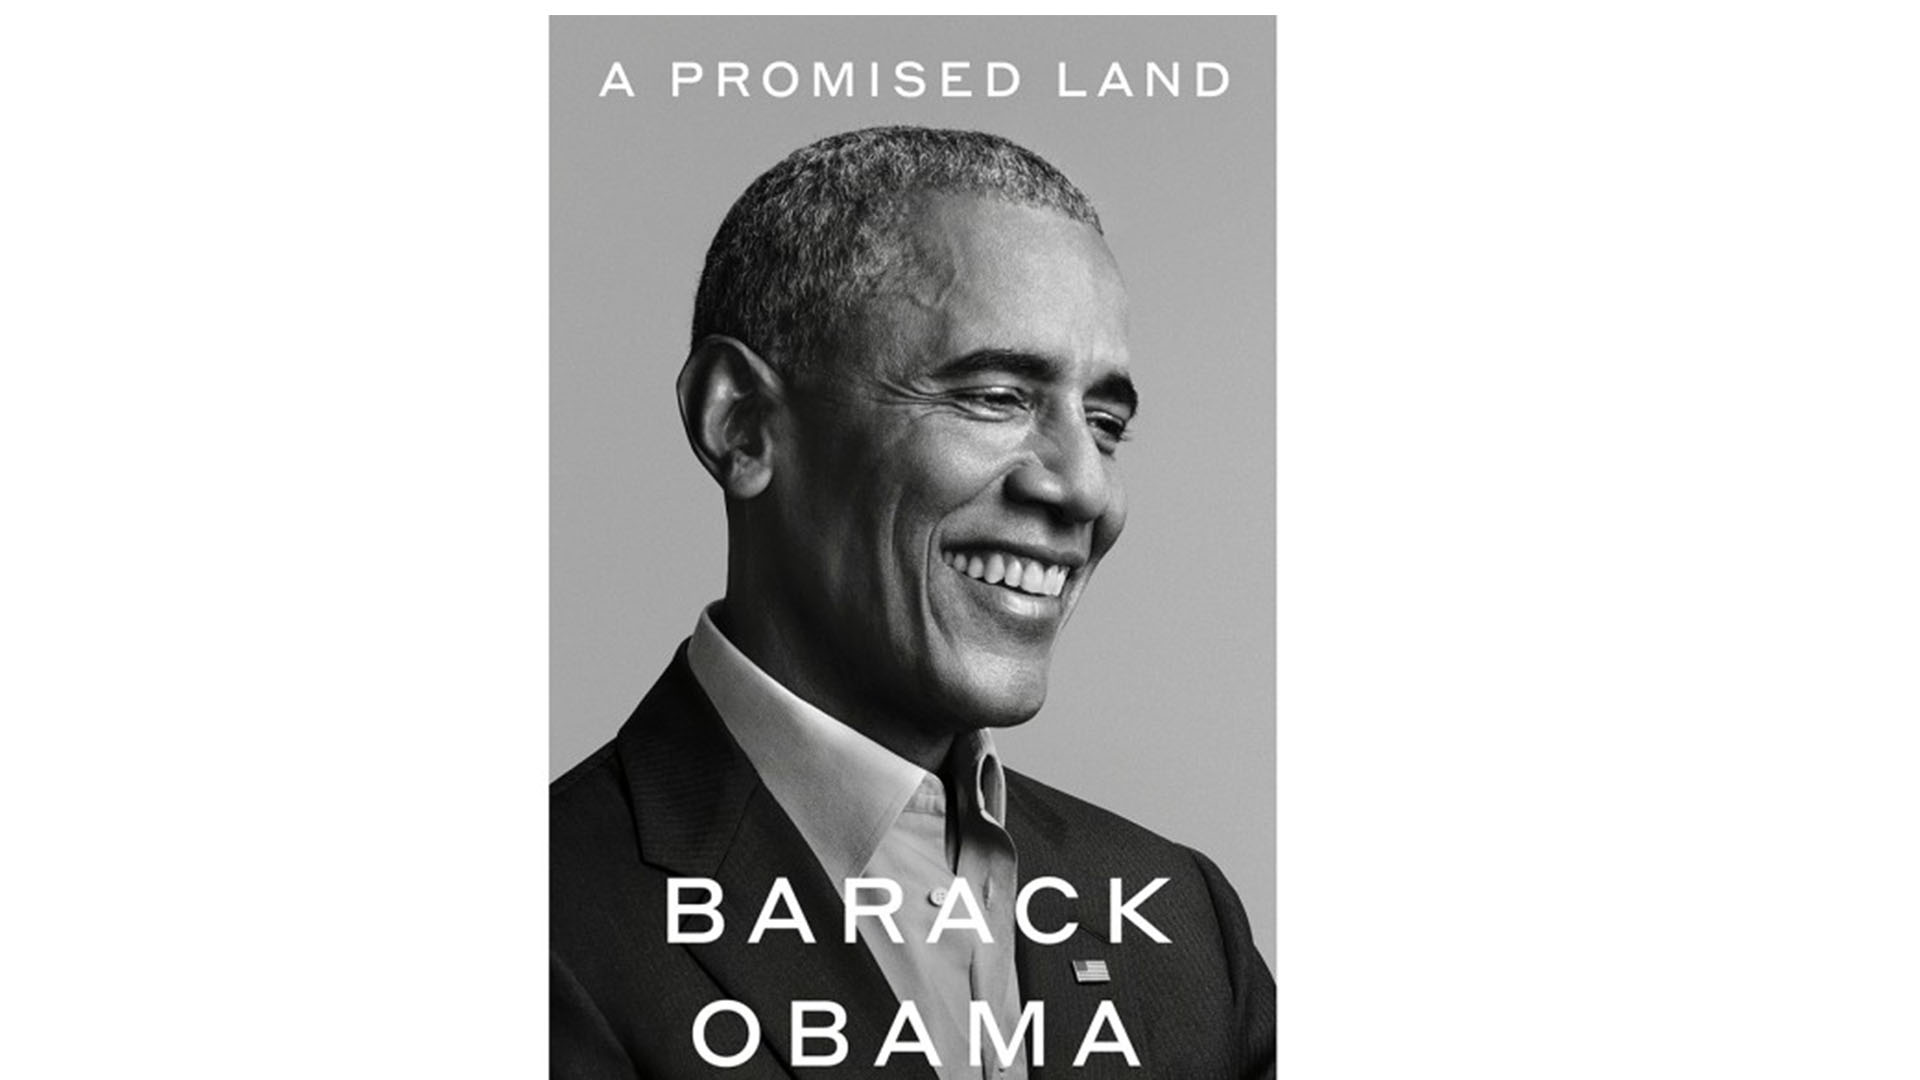 First volume of Barack Obama's memoir coming on November 17